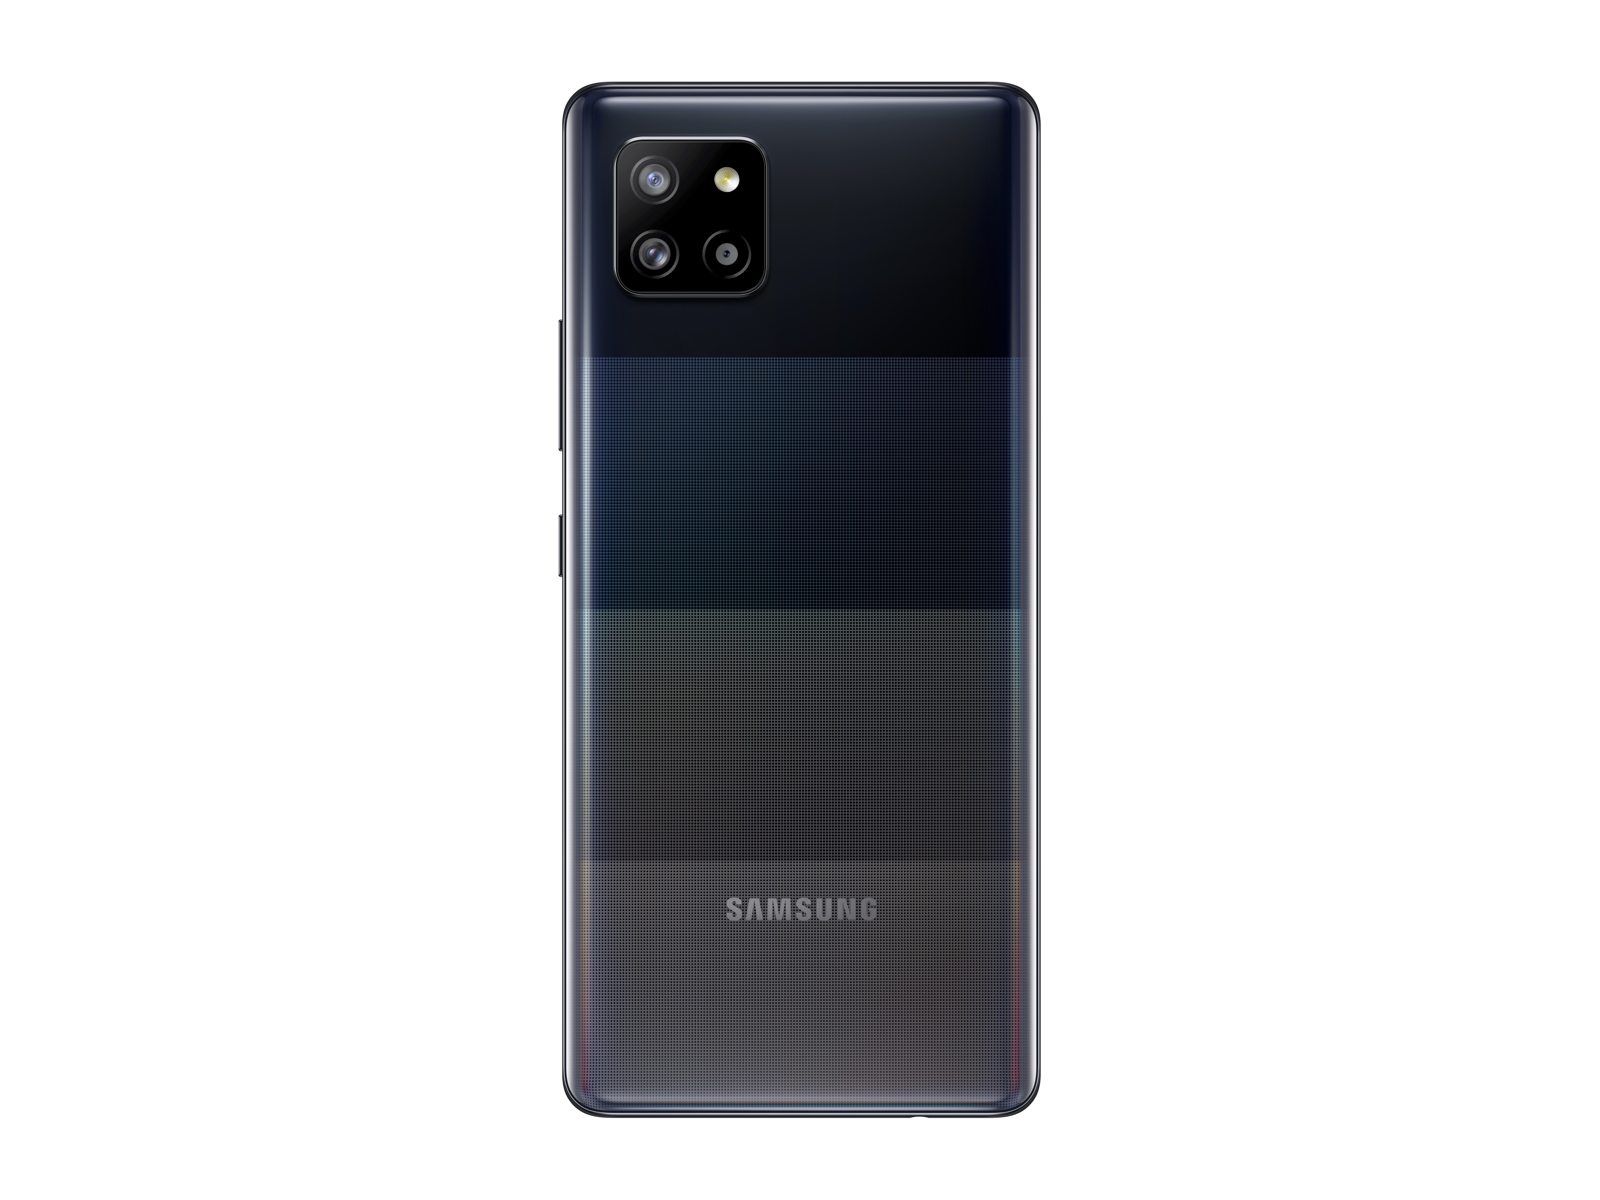 Thumbnail image of Galaxy A42 5G (Unlocked)